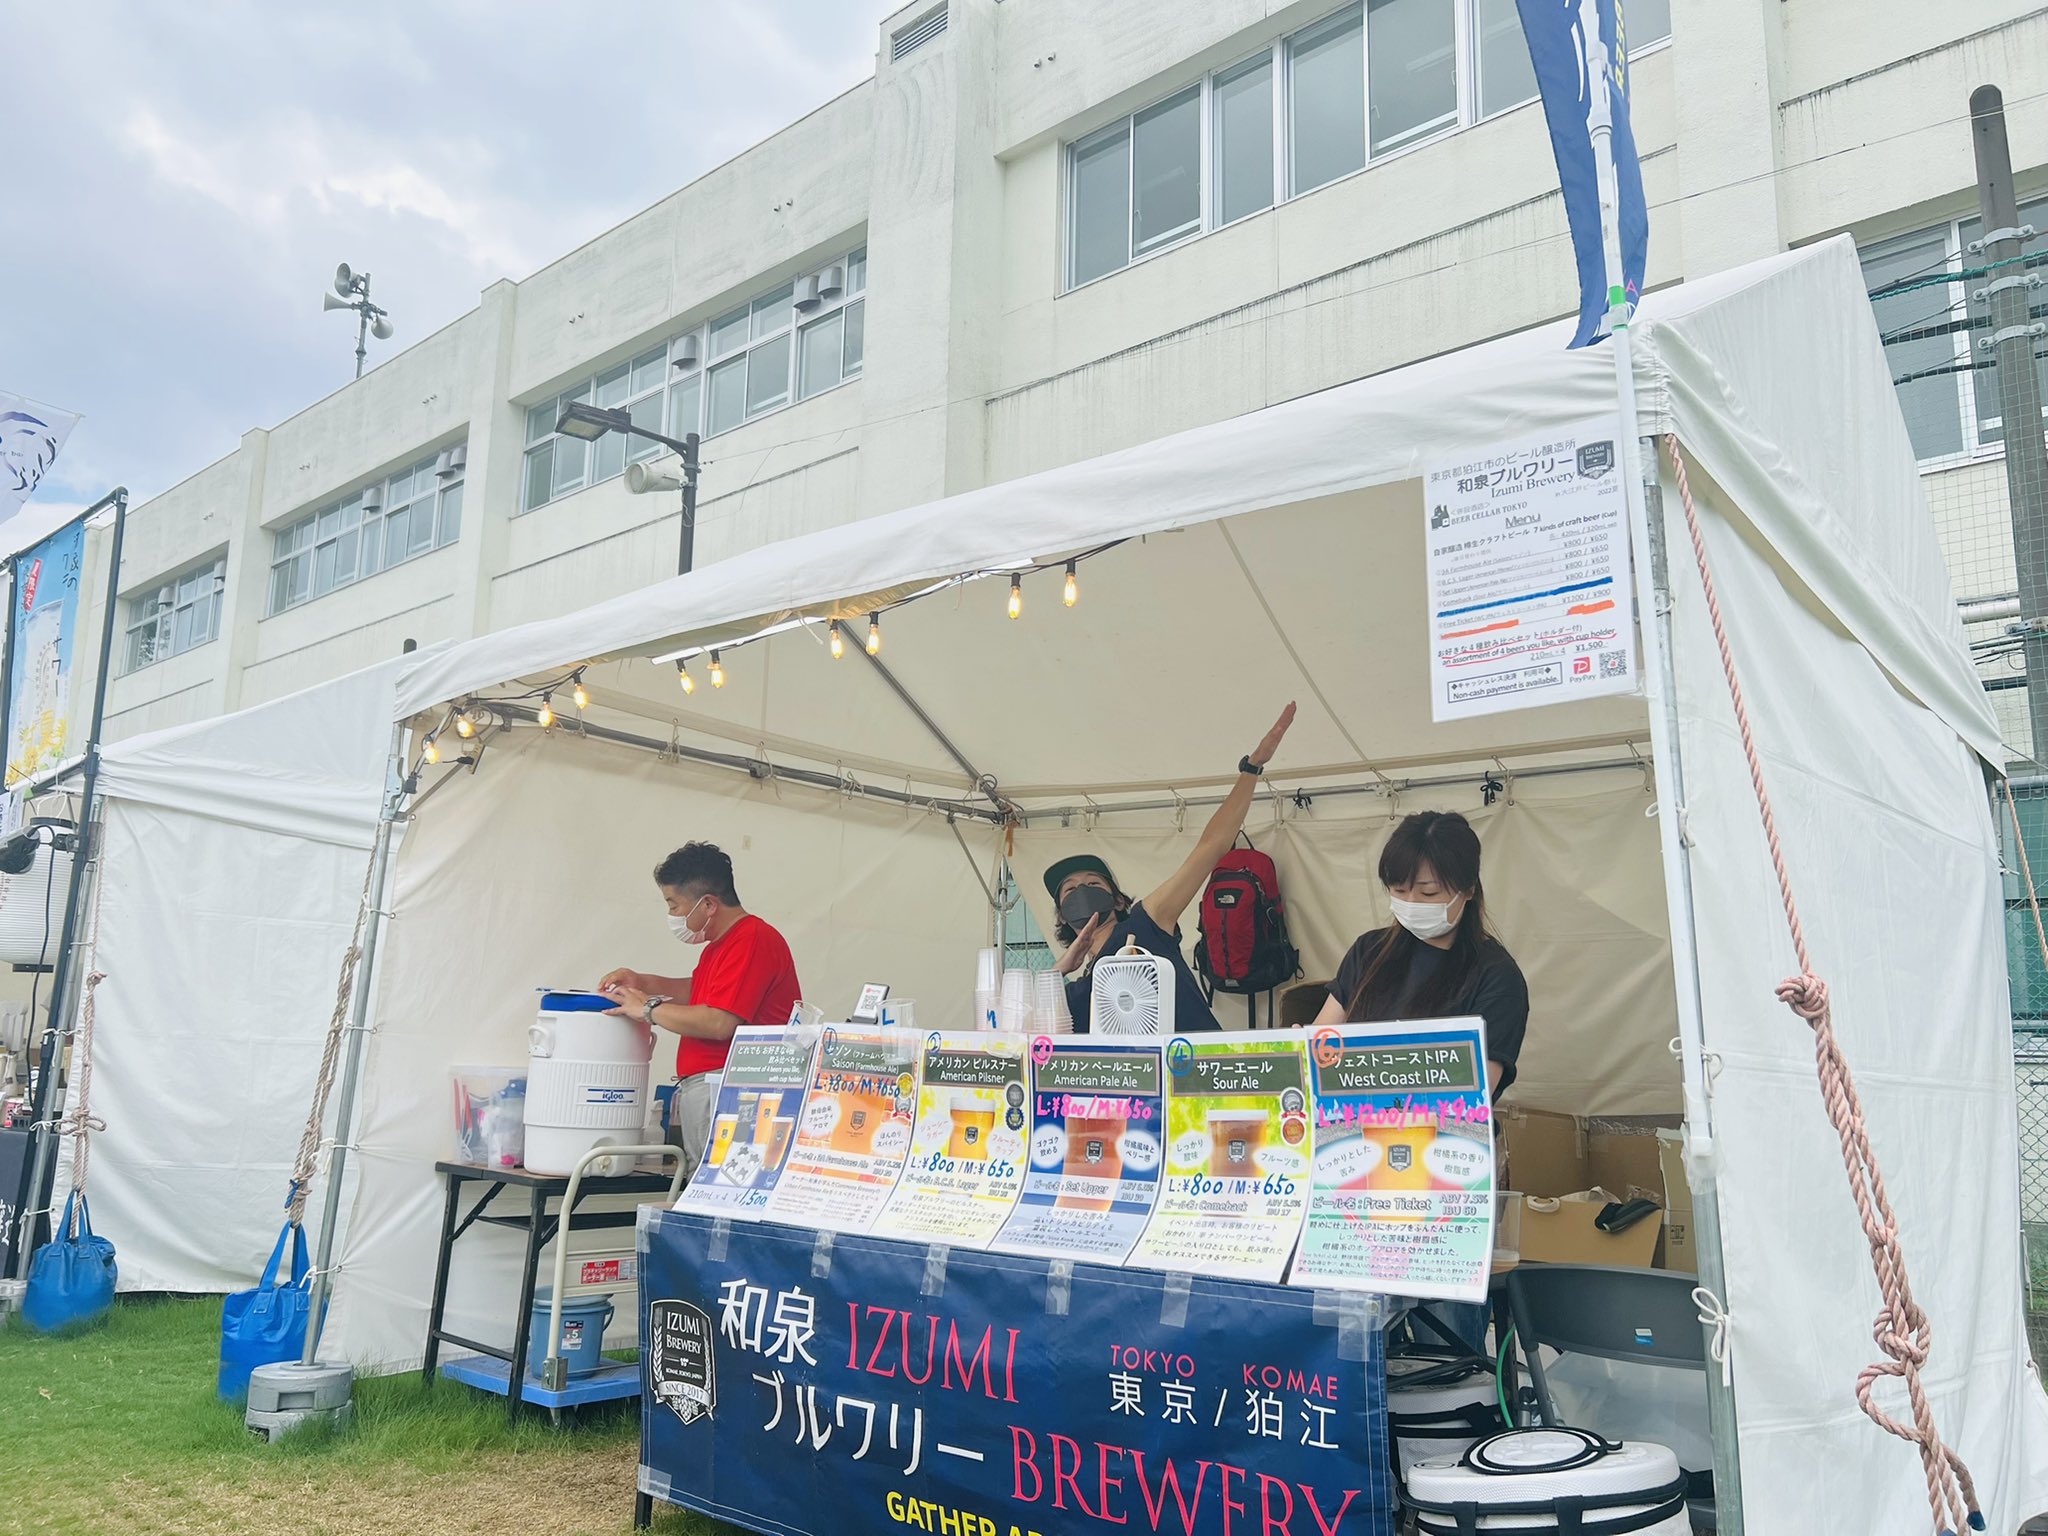 大江戸ビール祭り Oedobeerfest Twitter